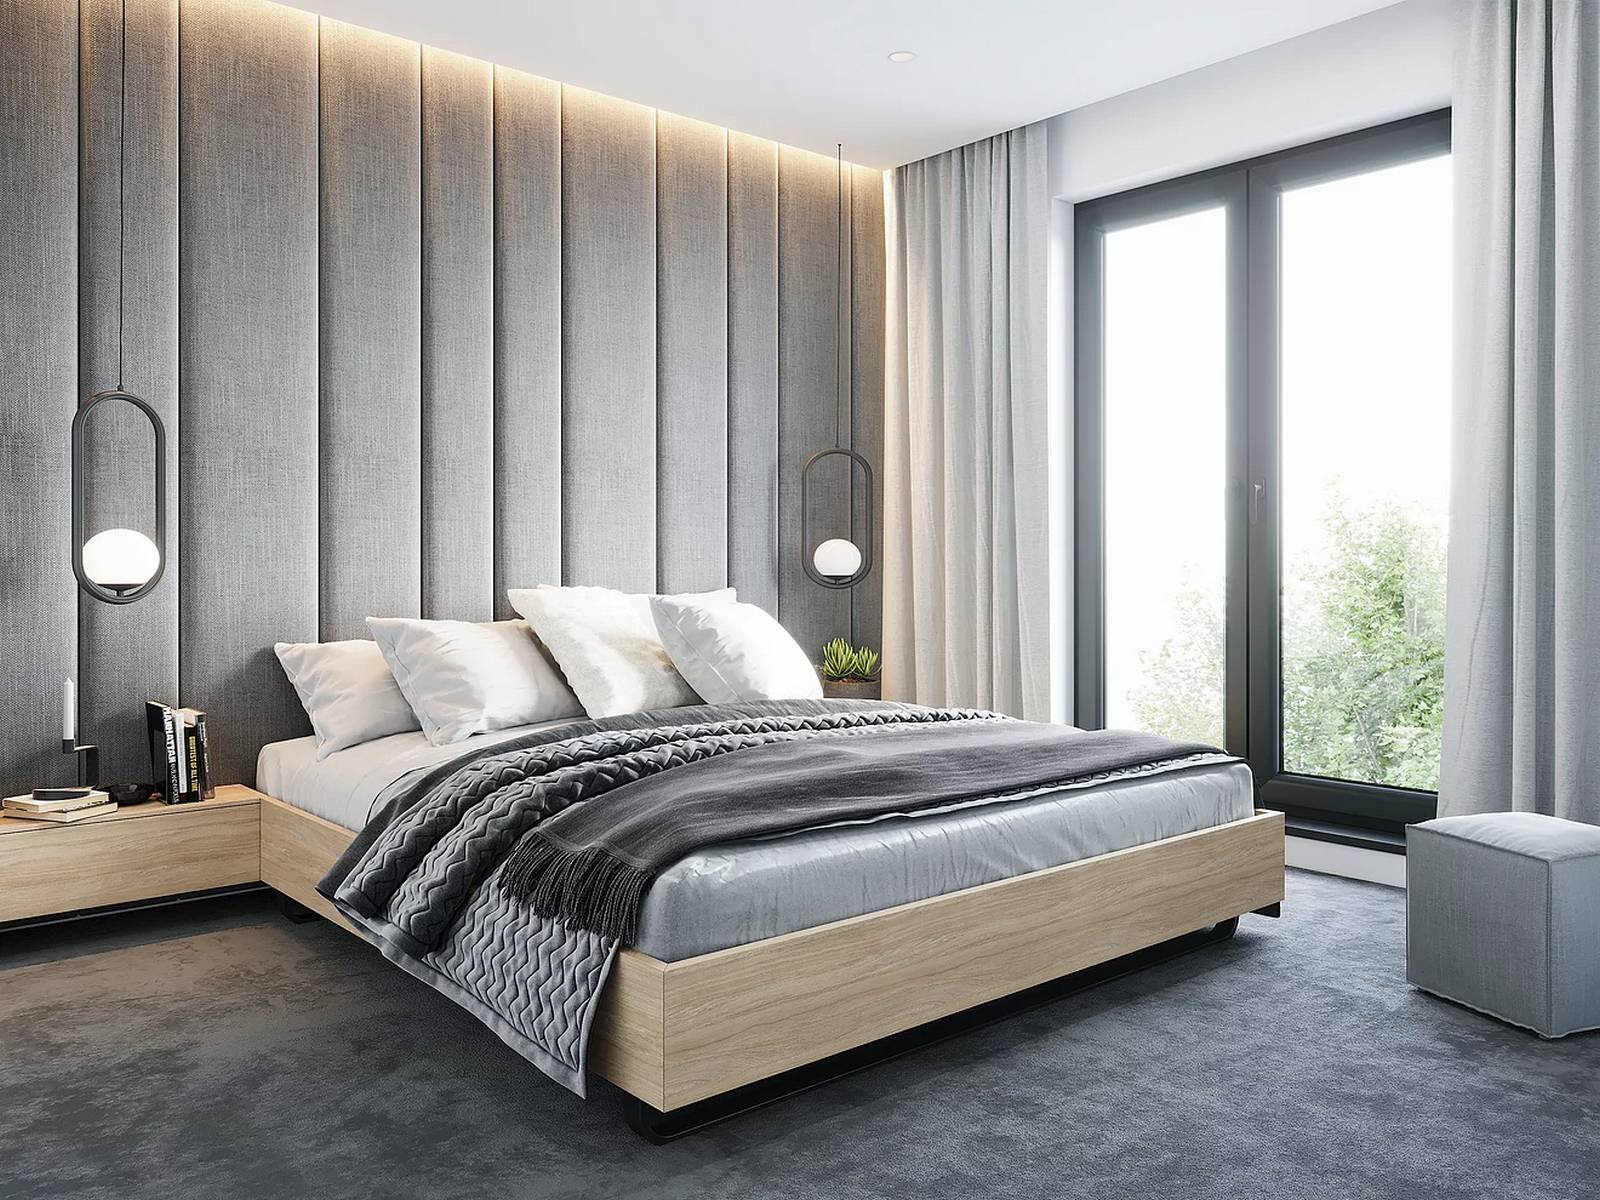 Phòng ngủ với sự 'thống trị' của gam màu xám thanh lịch, từ bức tường đầu giường, thảm trải sàn cho đến những chiếc chăn mềm mại.